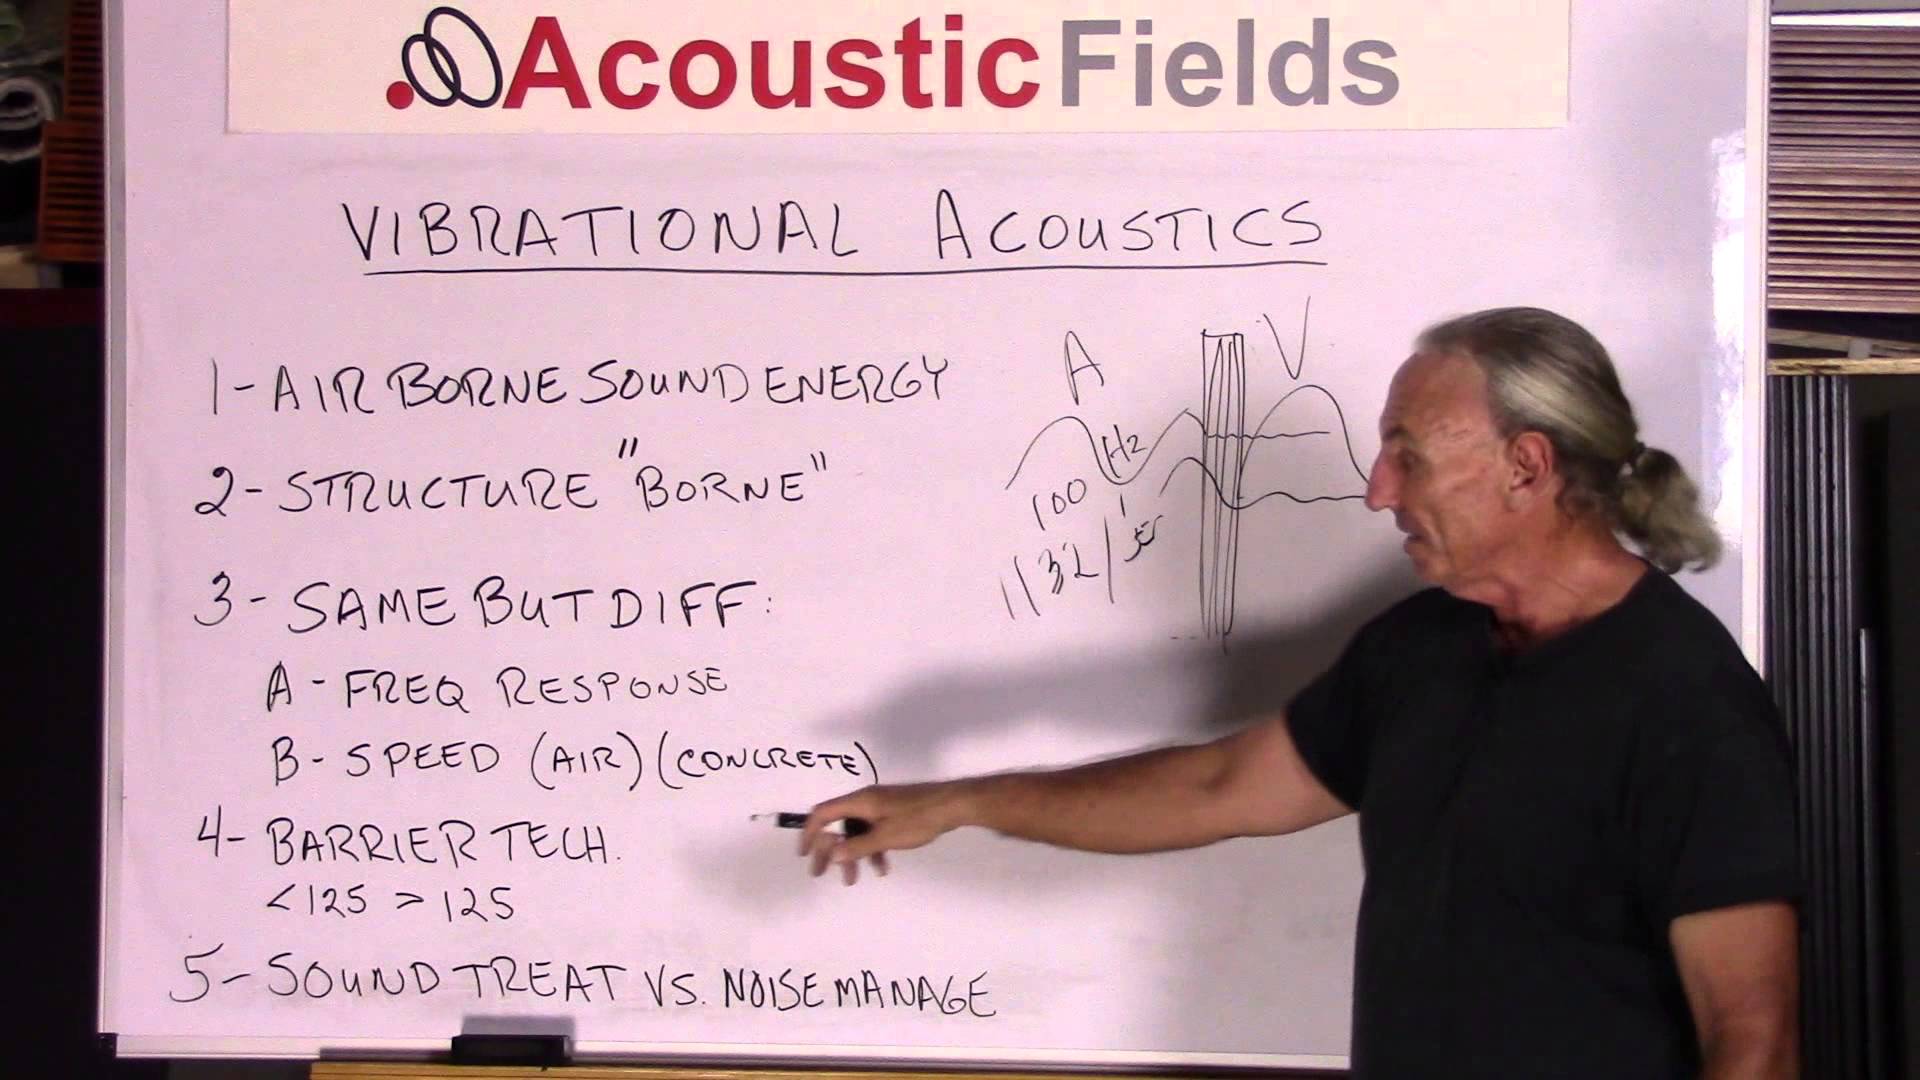 How vibration acoustics works